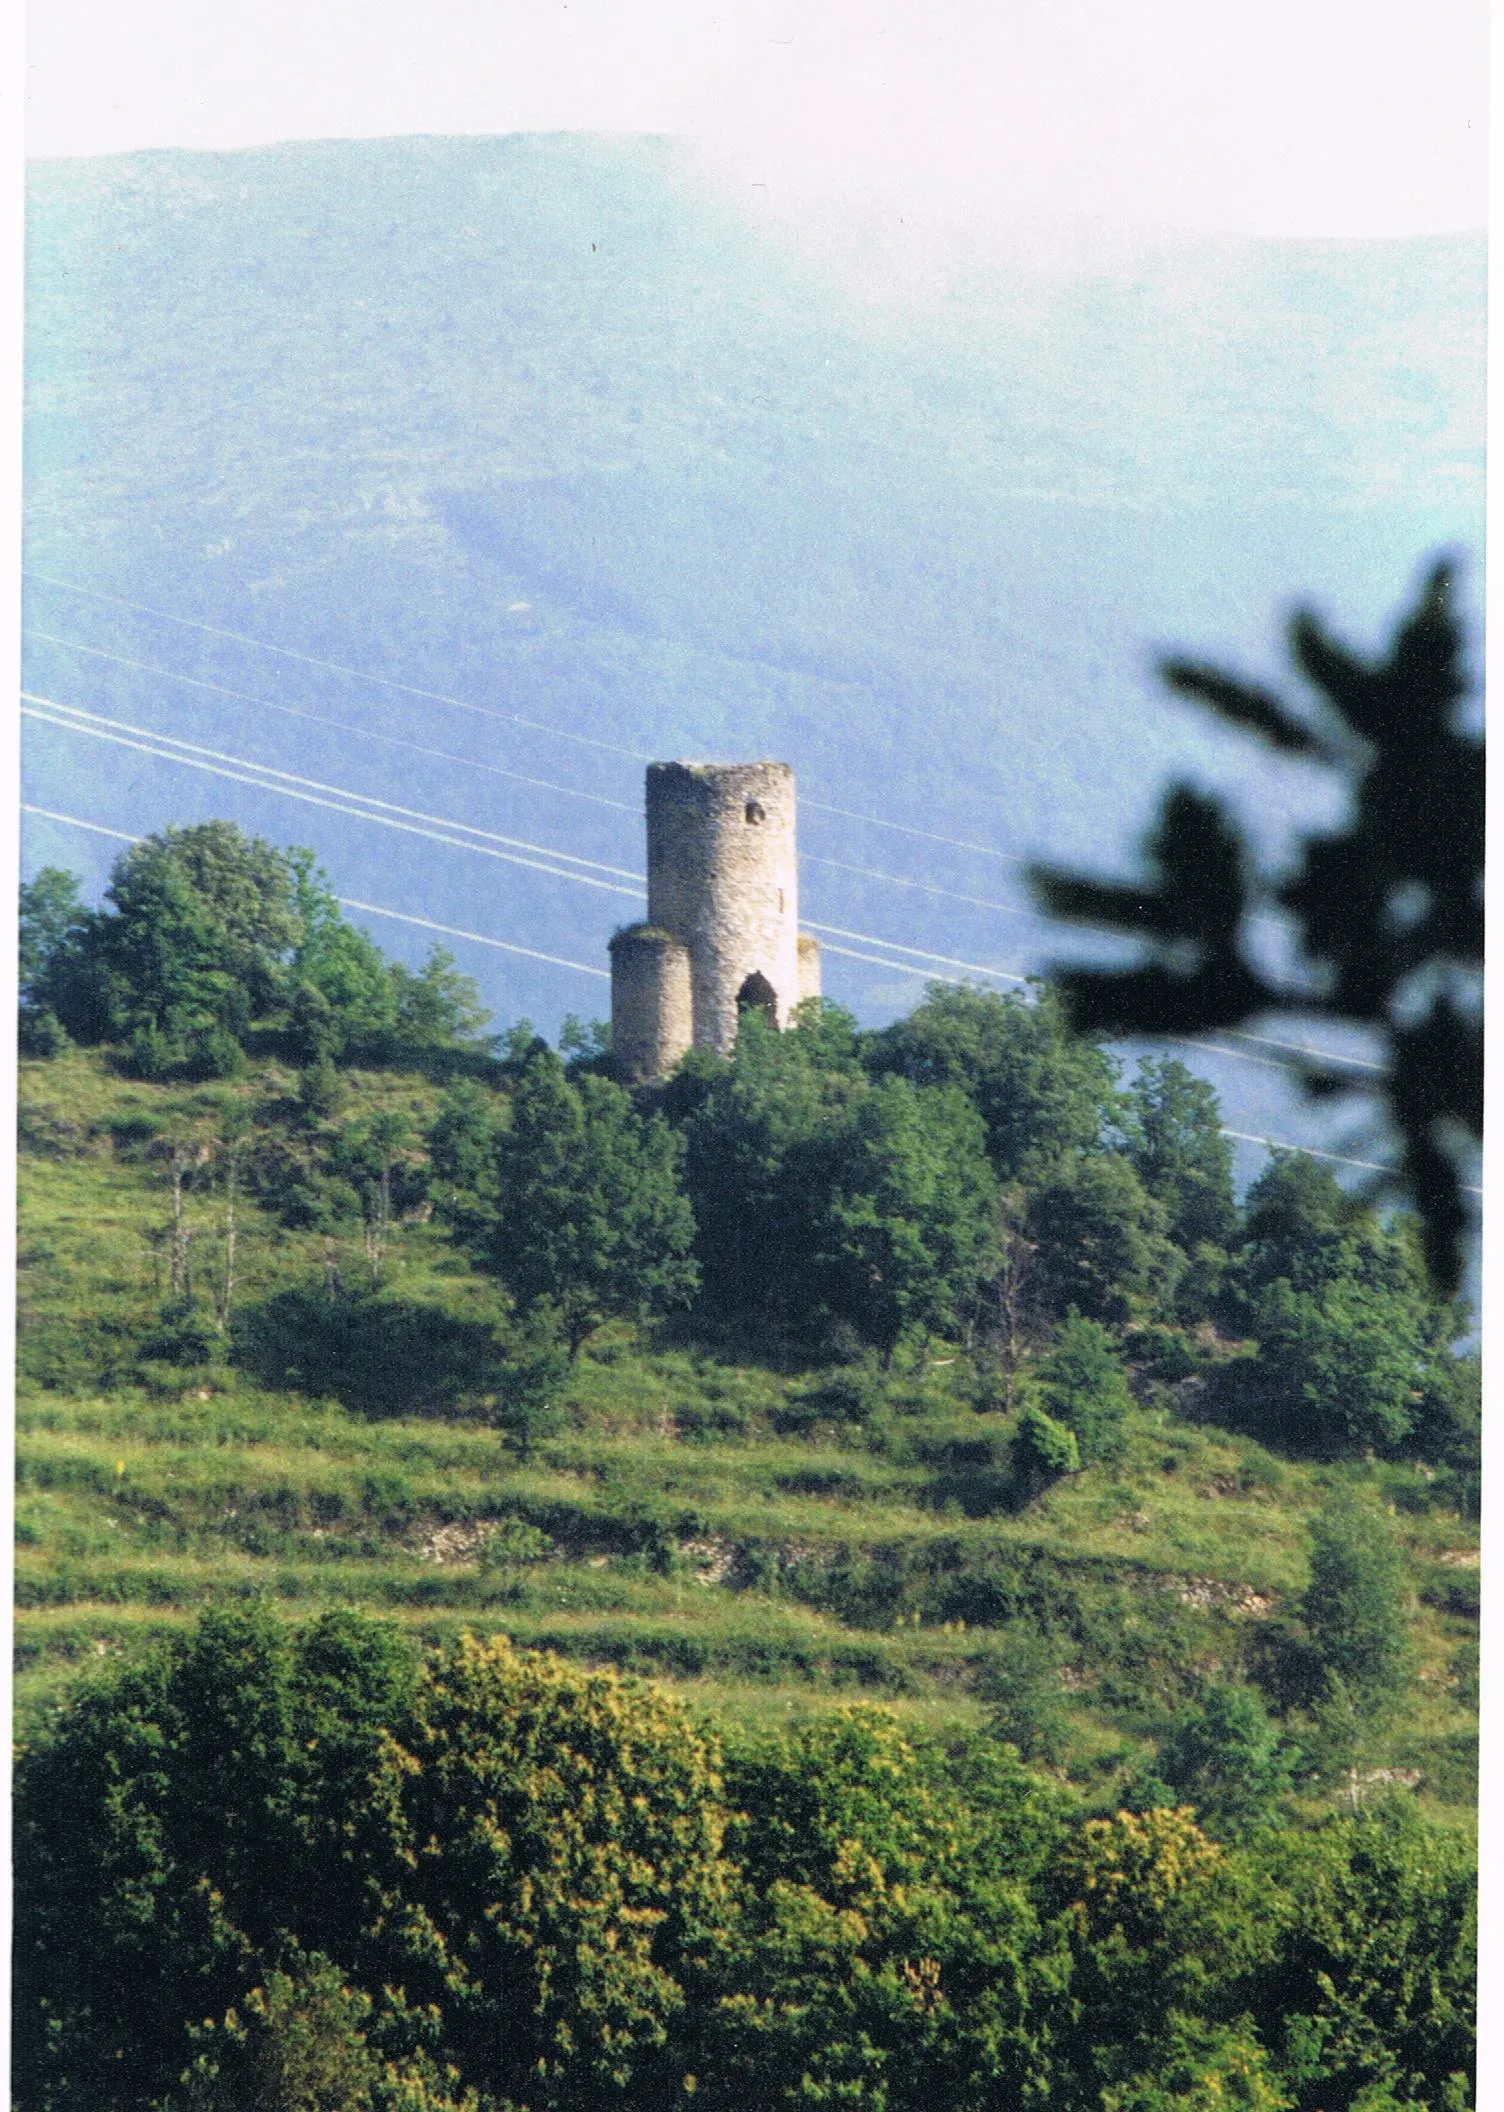 Photo showing: La tour de Corsavy est une tour de garde médiévale de la commune de Corsavy, dans la région naturelle du Vallespir, en Catalogne du Nord, dans le département des Pyrénées-Orientales. (Wikipédia)